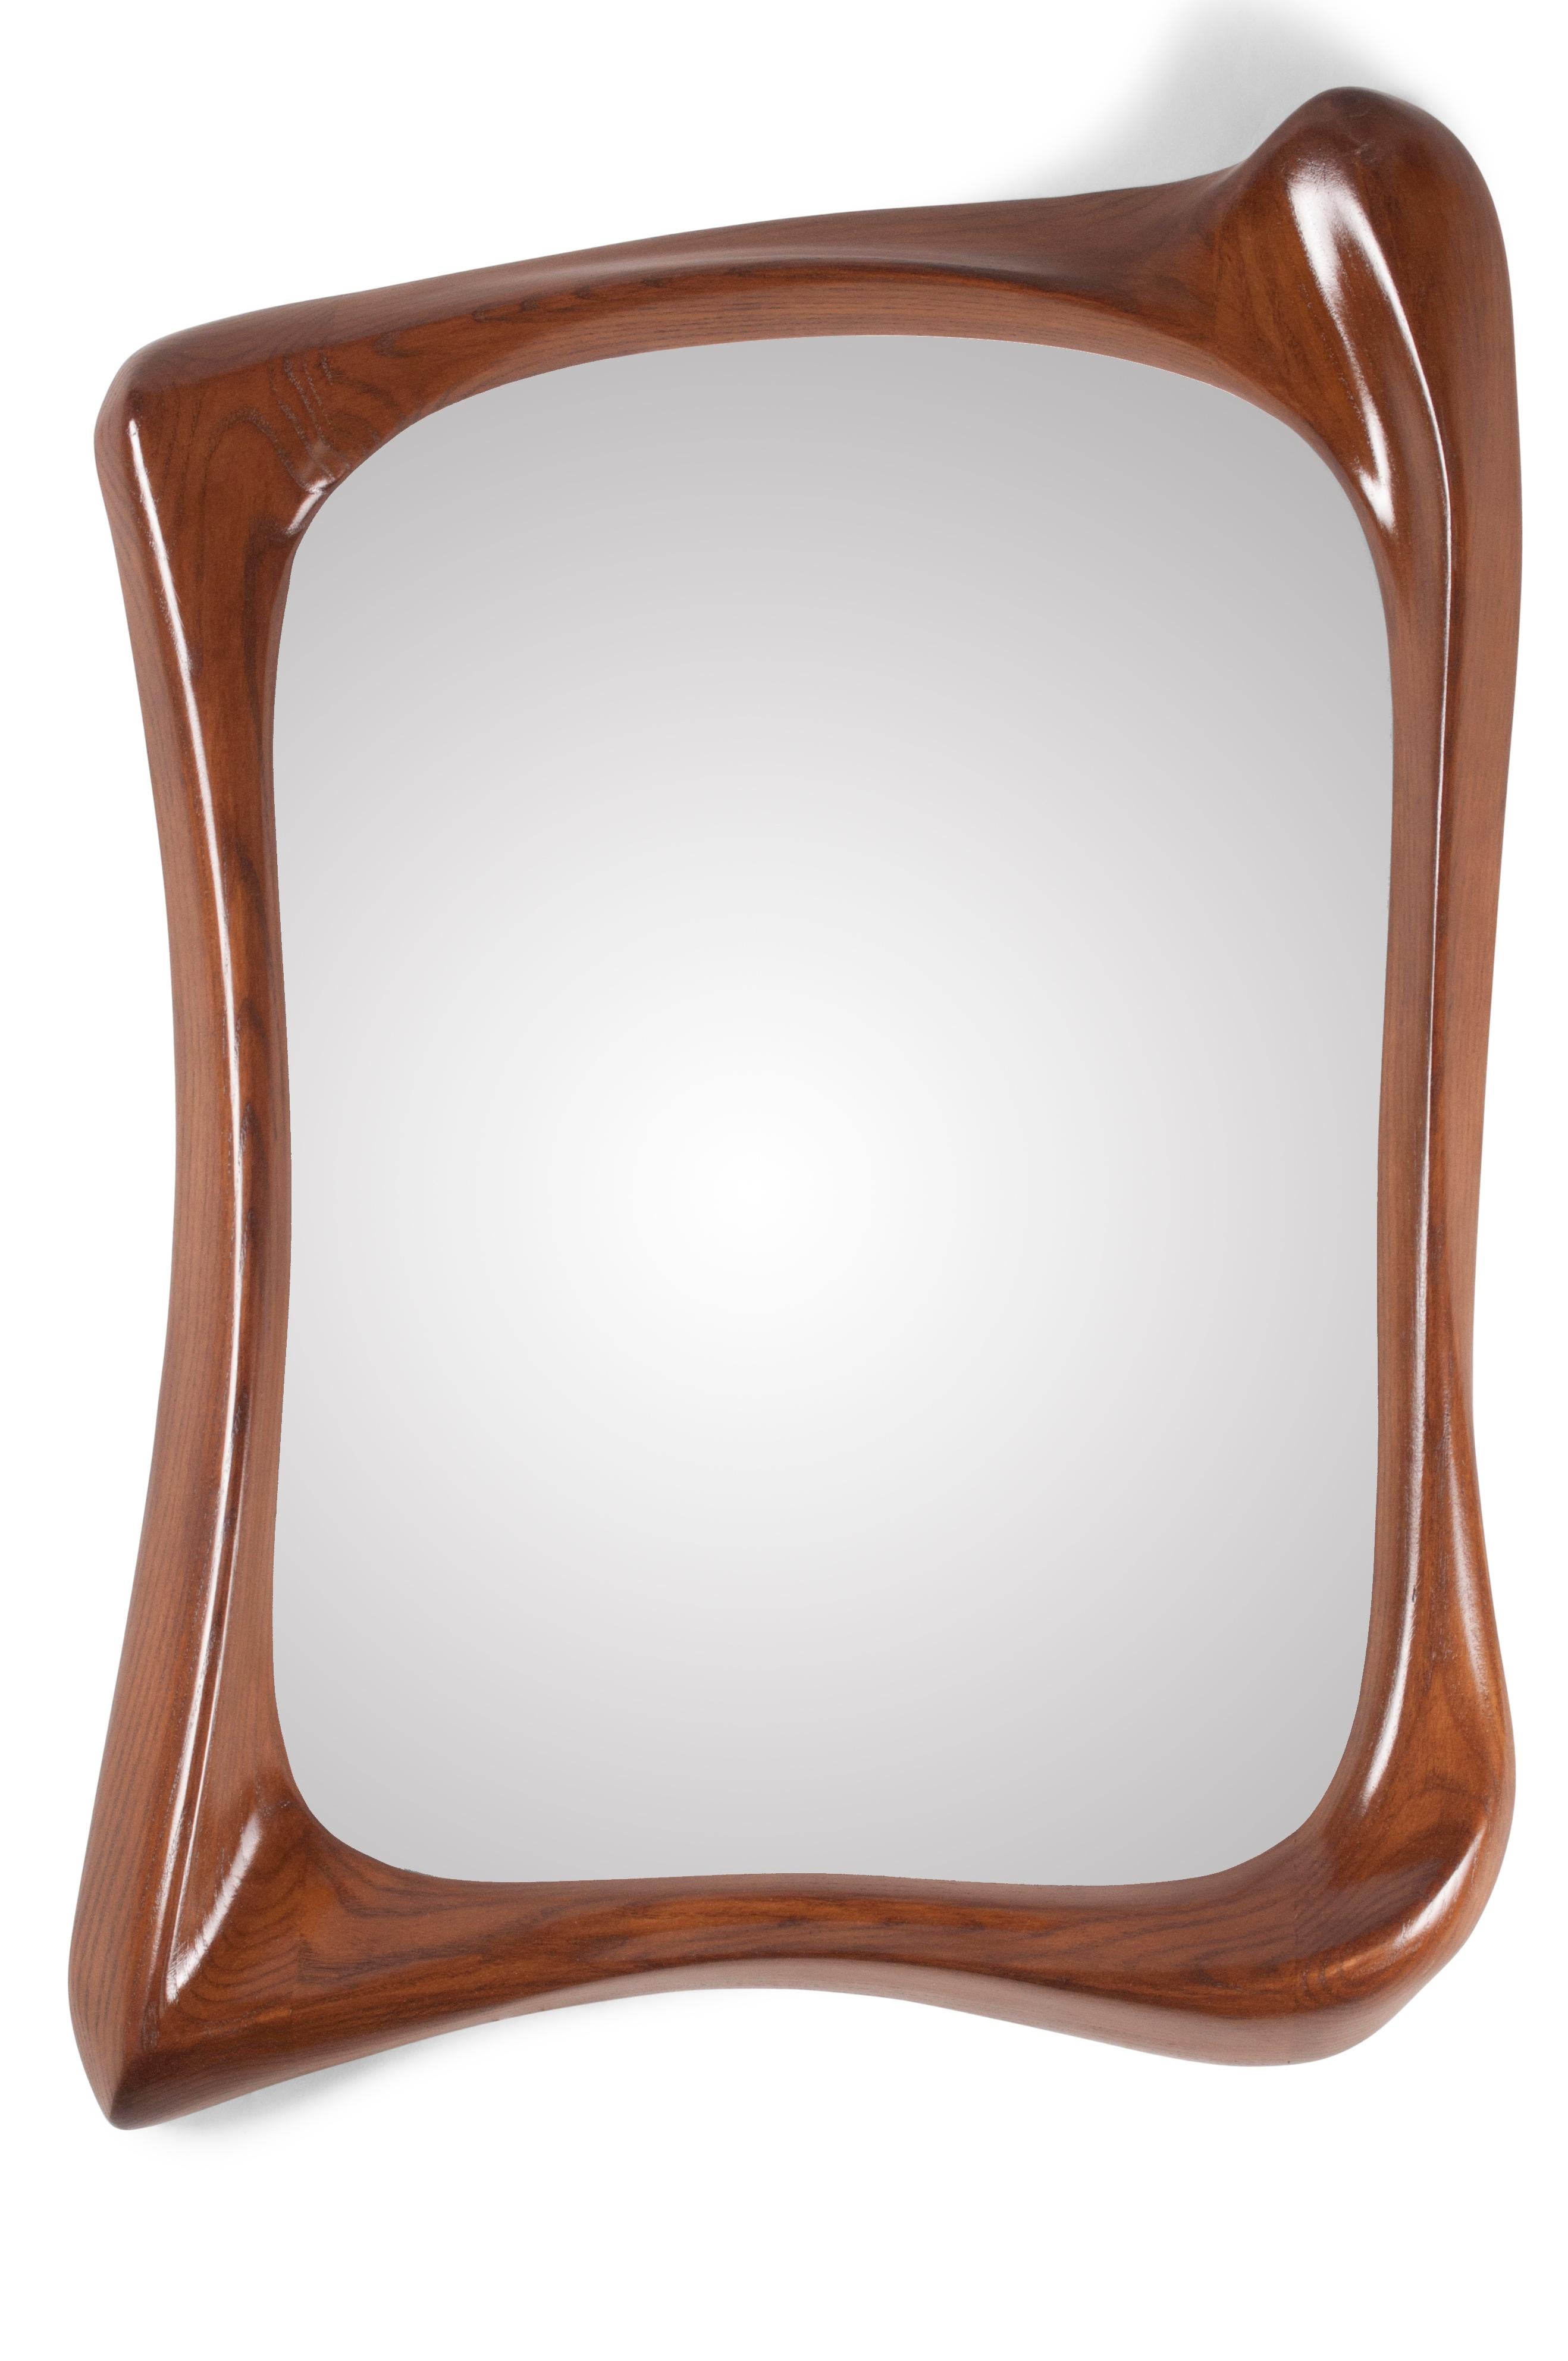 Narzissen-Spiegel mit nussbaumfarbener Oberfläche auf Eschenholz.

Über Amorph: 
Amorph ist ein Design- und Produktionsunternehmen mit Sitz in Los Angeles, Kalifornien. Wir sind stolz auf unsere handgefertigten Entwürfe, die wir mit Technologie